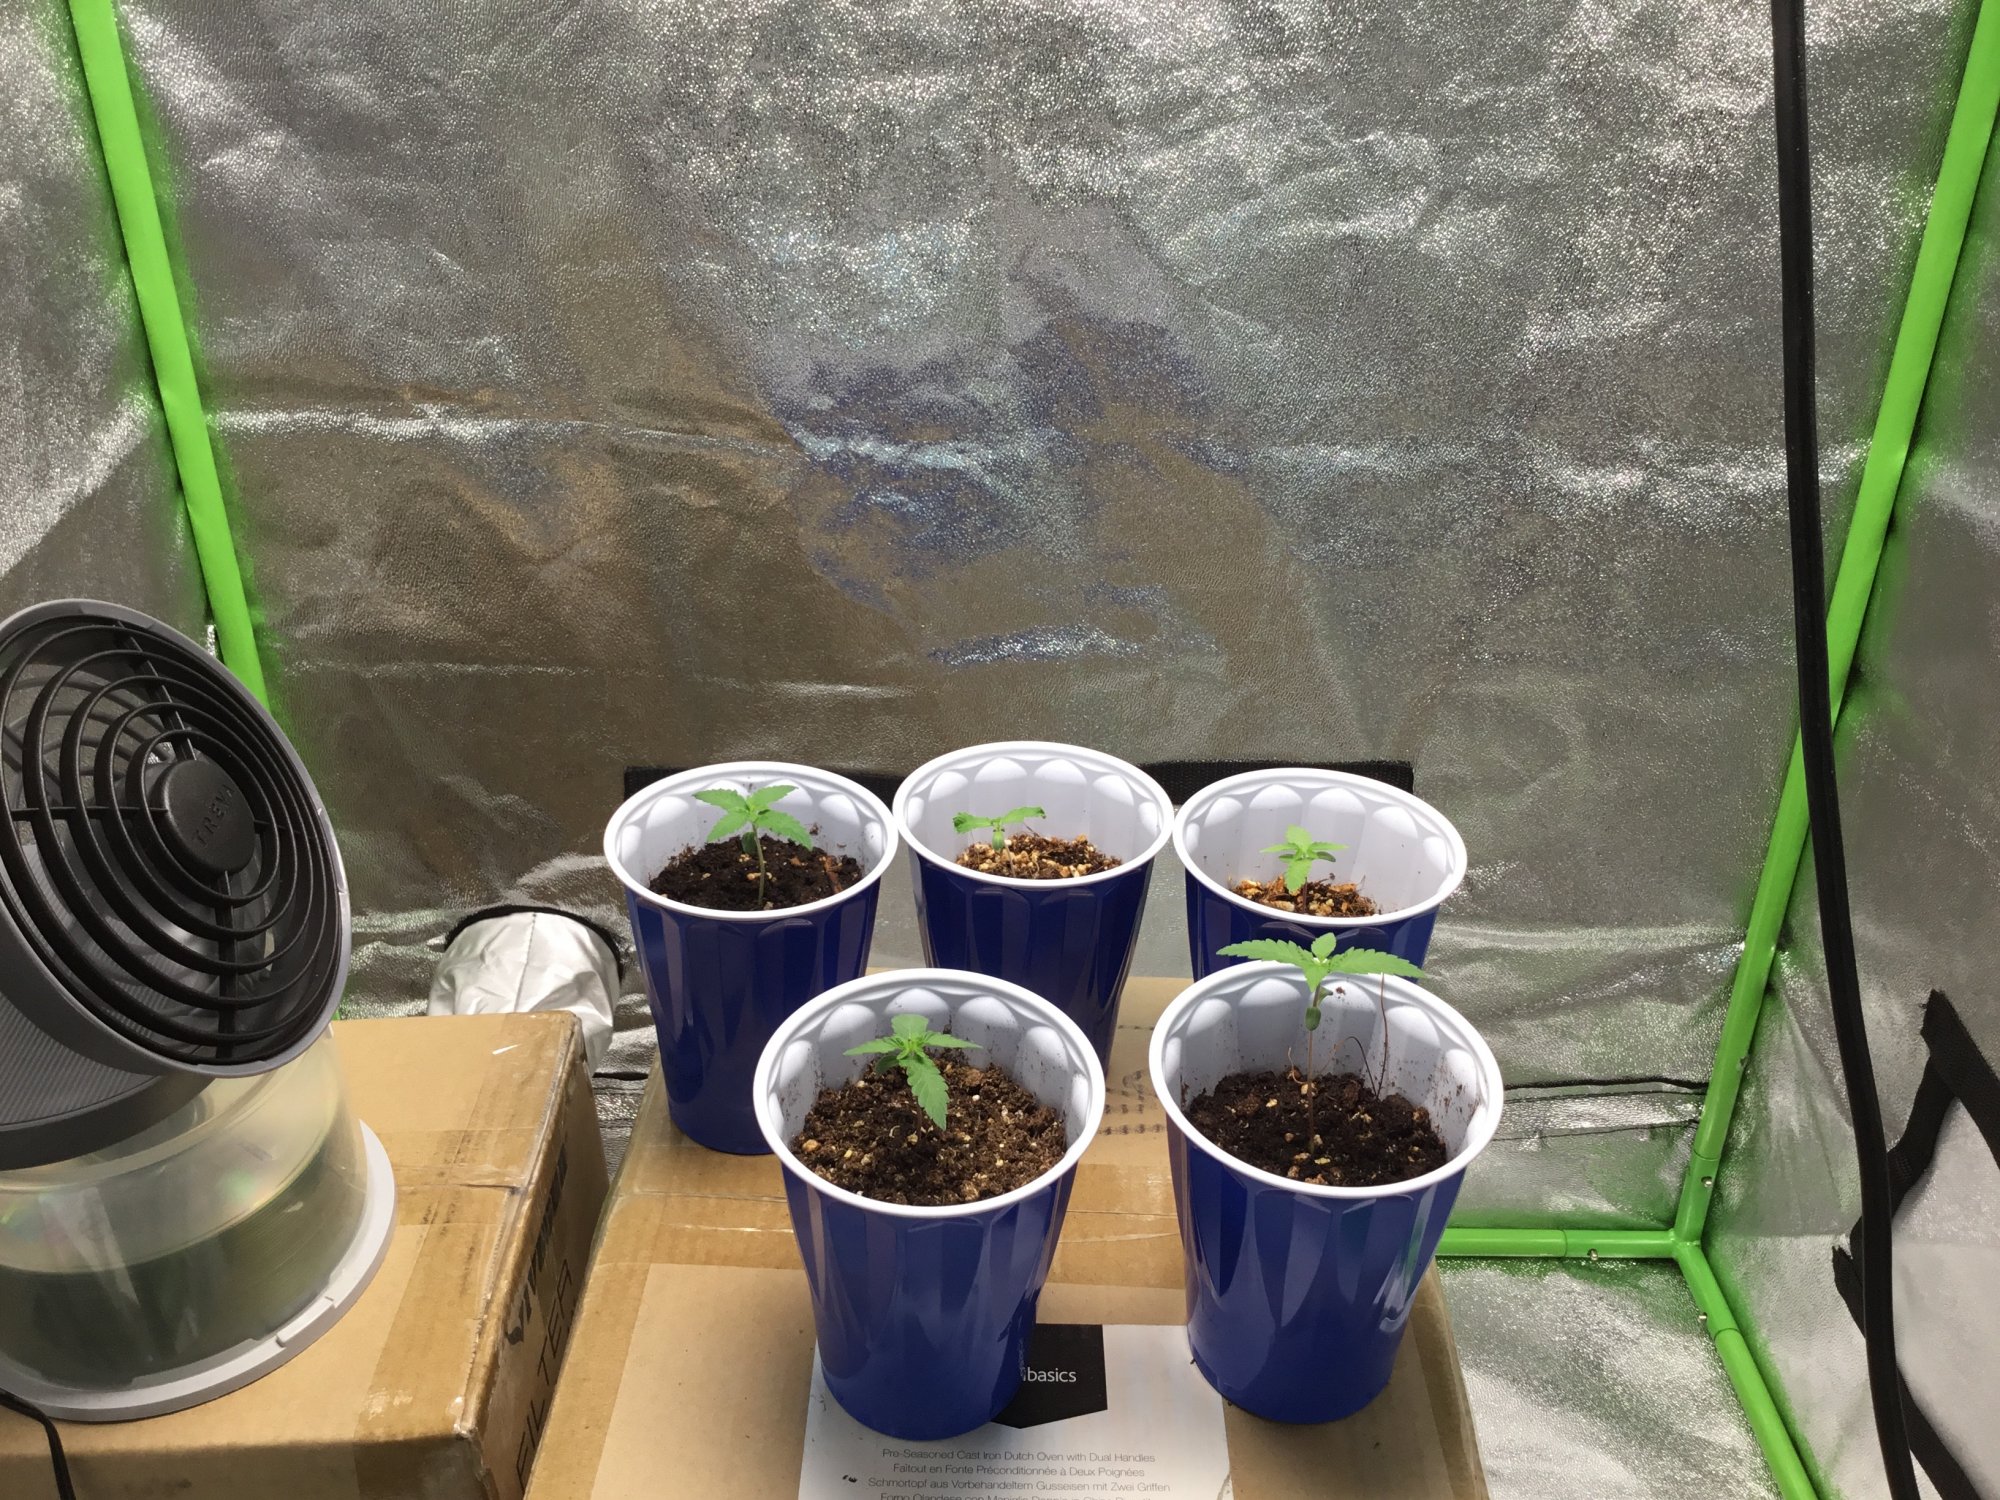 Slow seedlings or normal growth